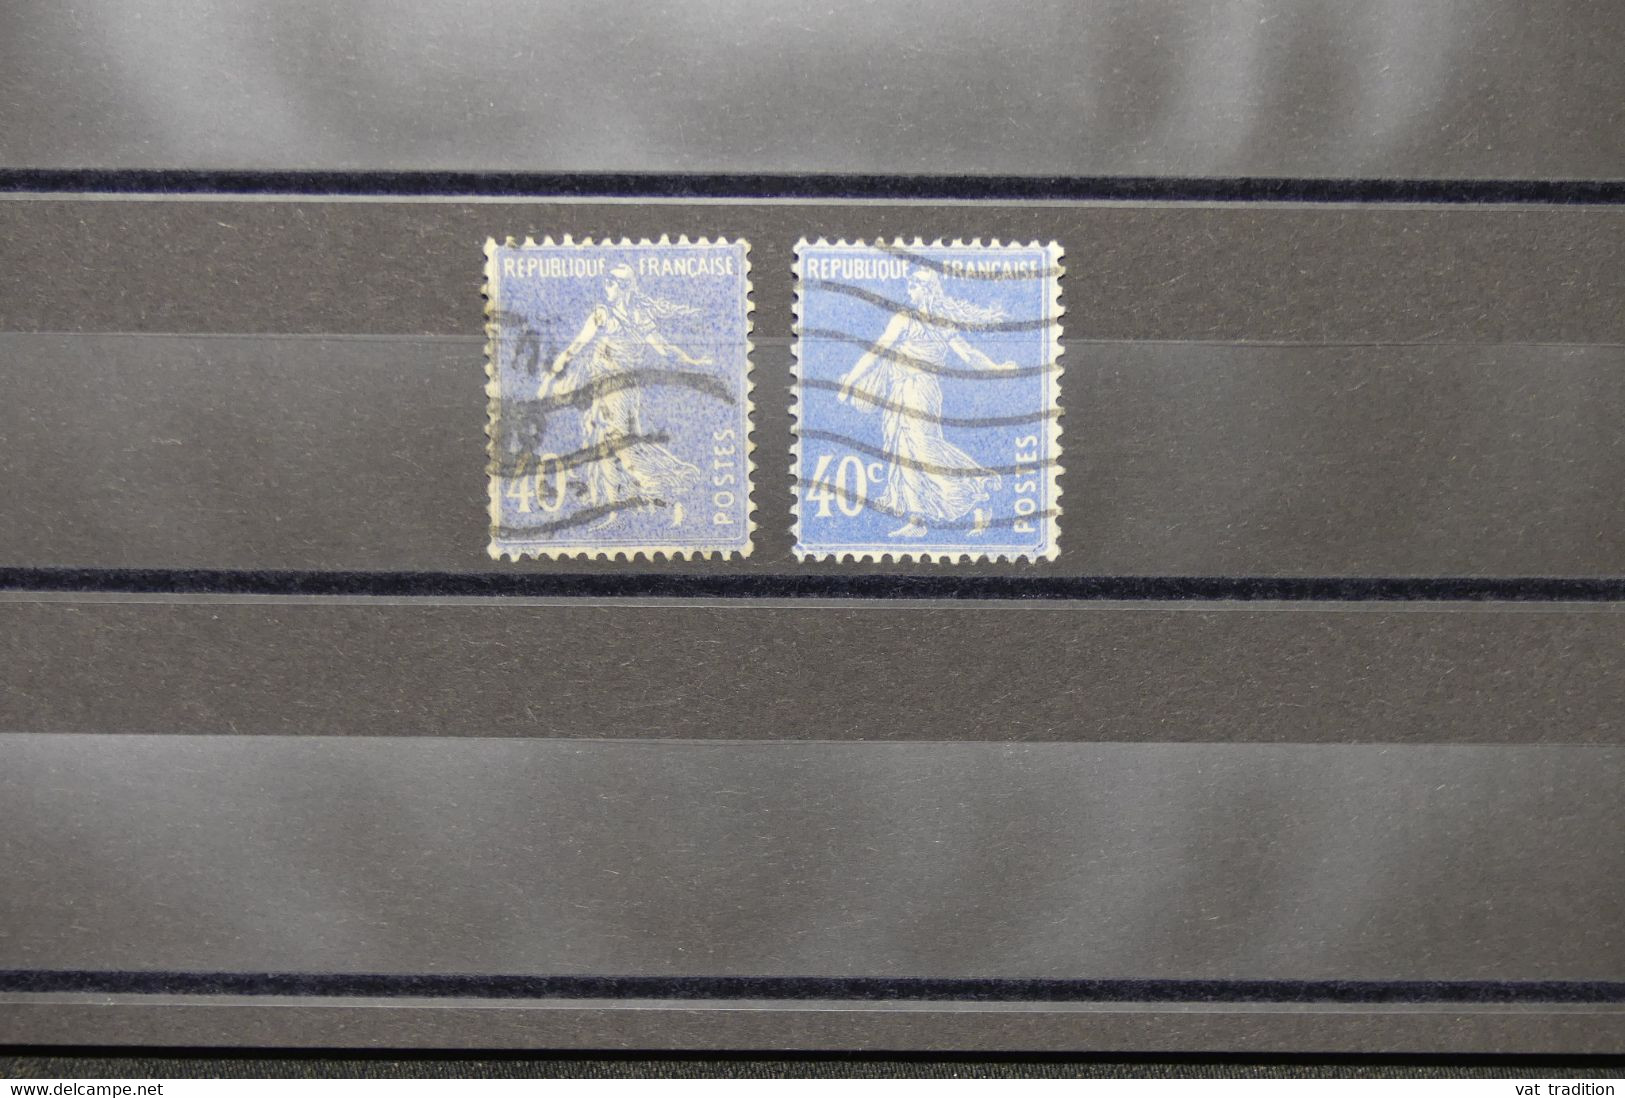 FRANCE - Variété - N° Yvert 237 - Type Semeuse - Mot Postes Maigre + 1 Gras - Oblitéré - L 73990 - Usados